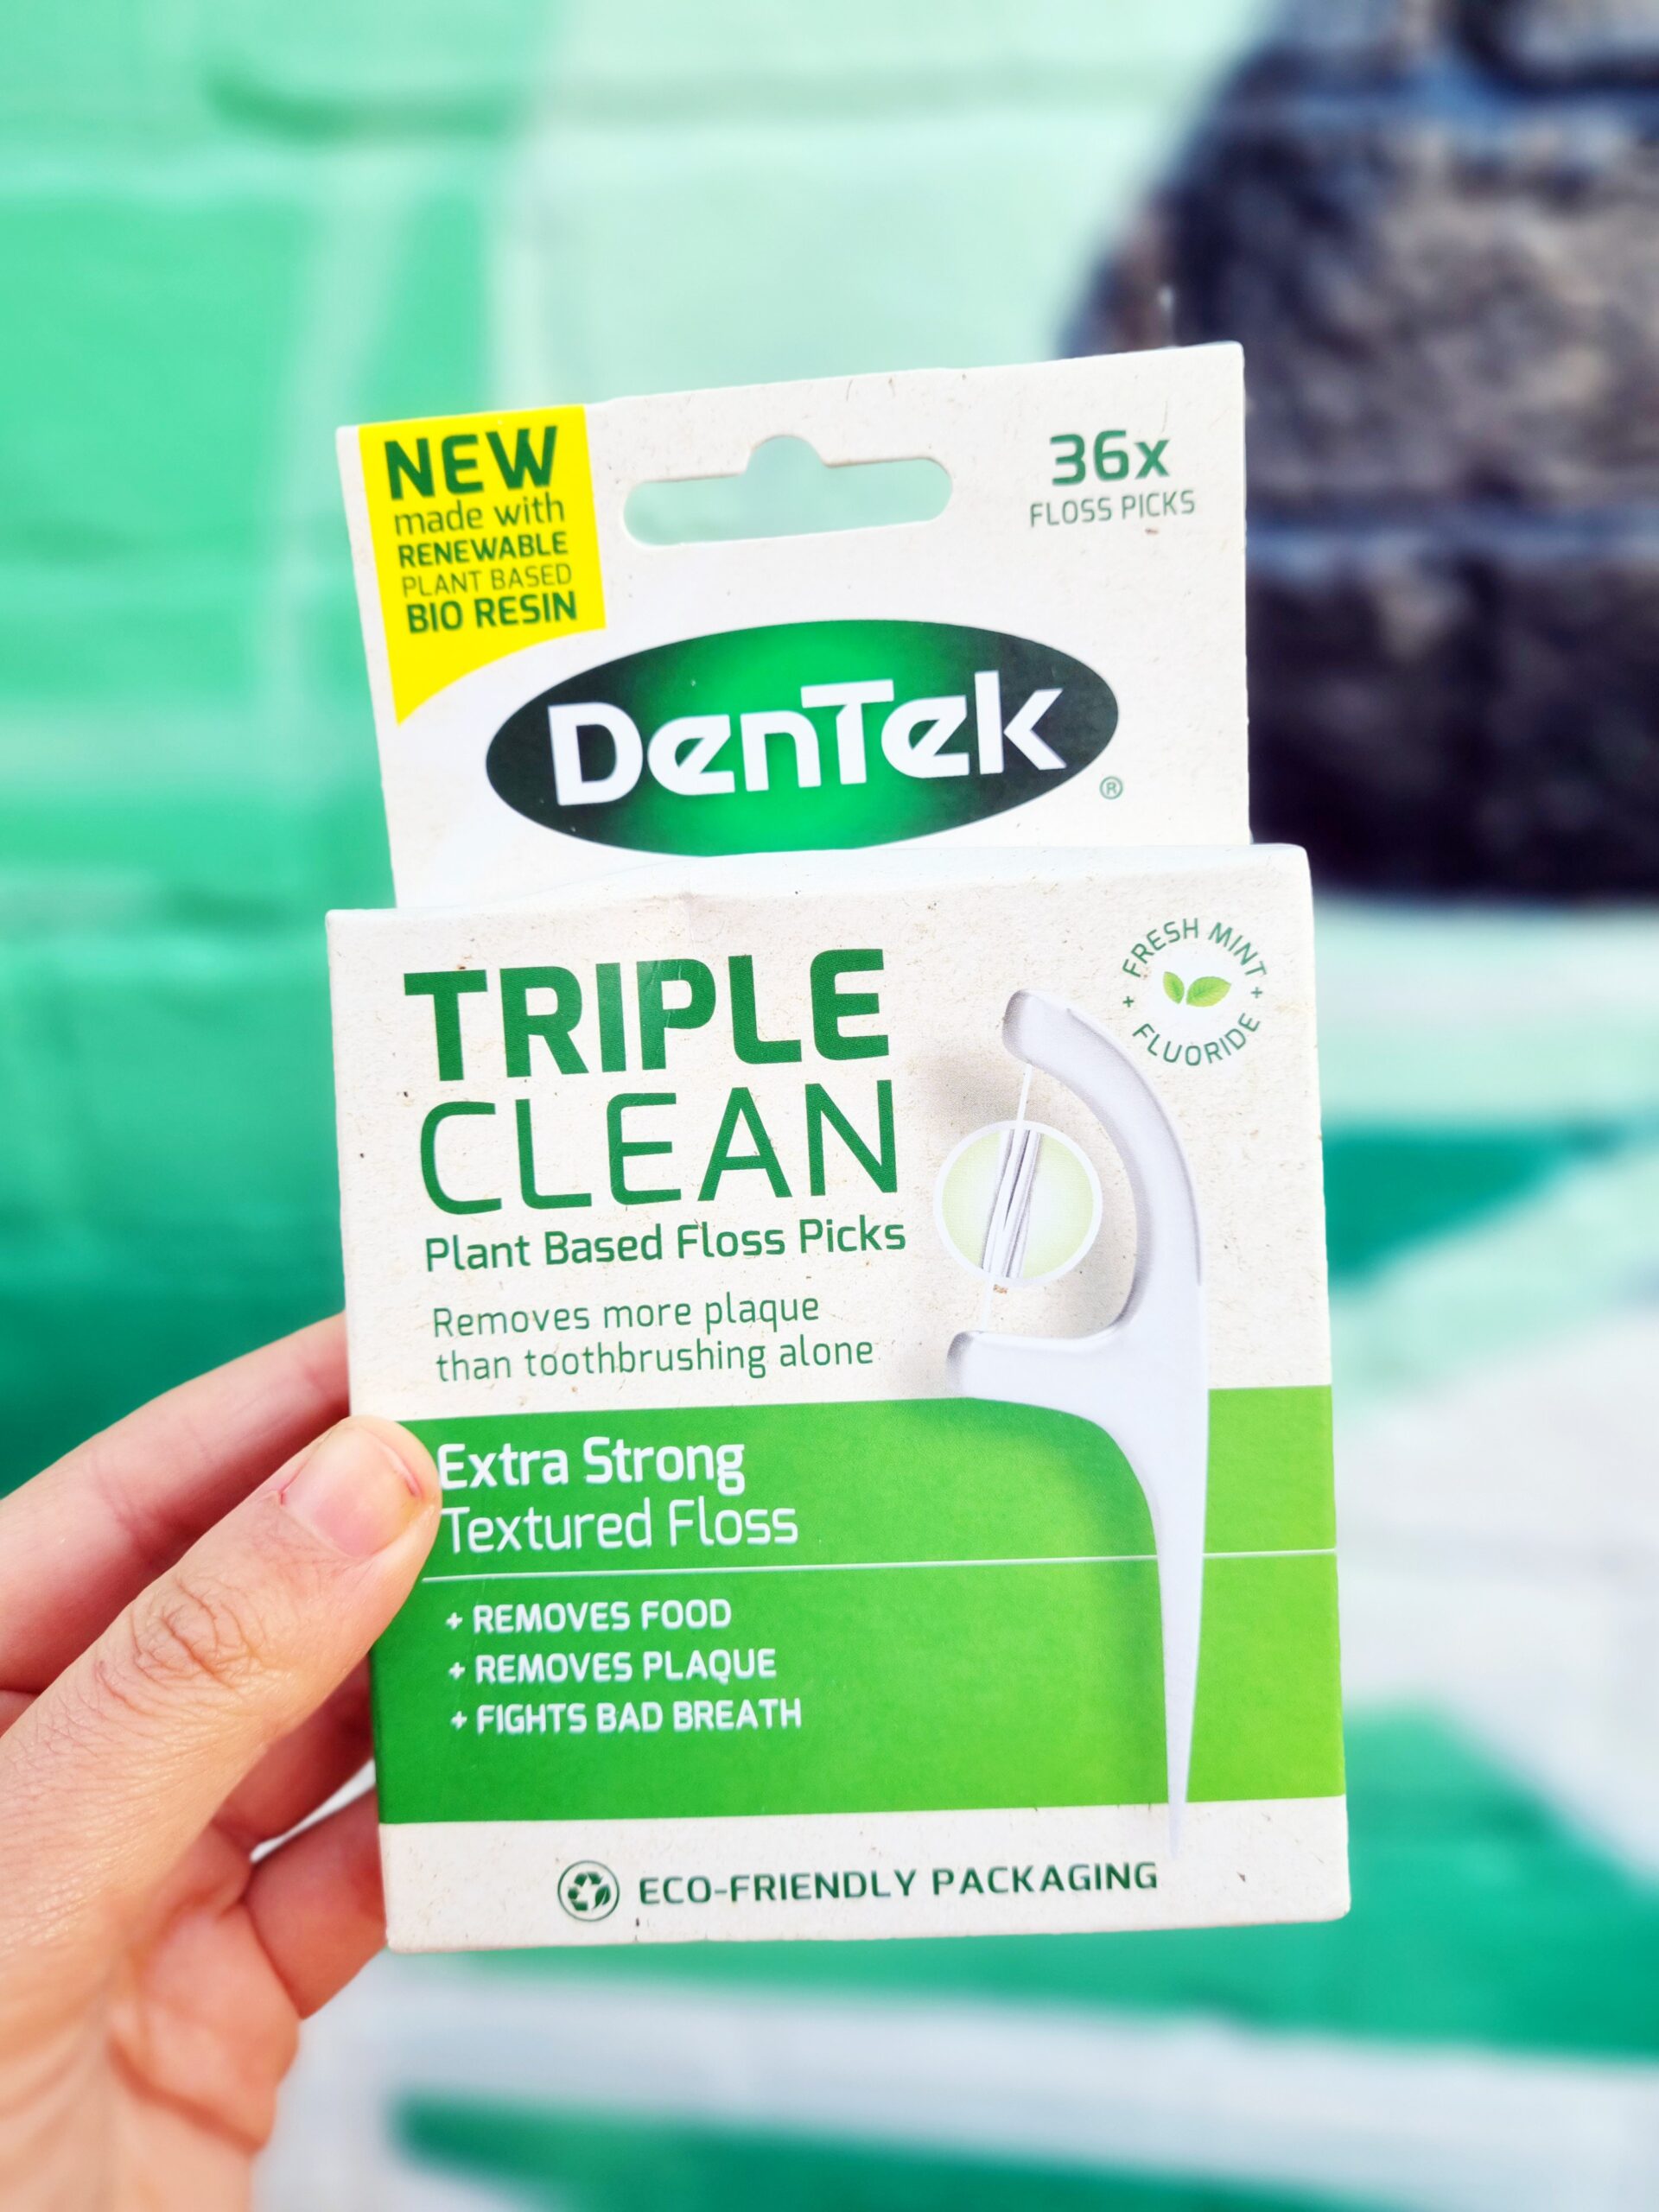 <img src="dentek.jpg" alt="dentek triple clean floss kit"/>